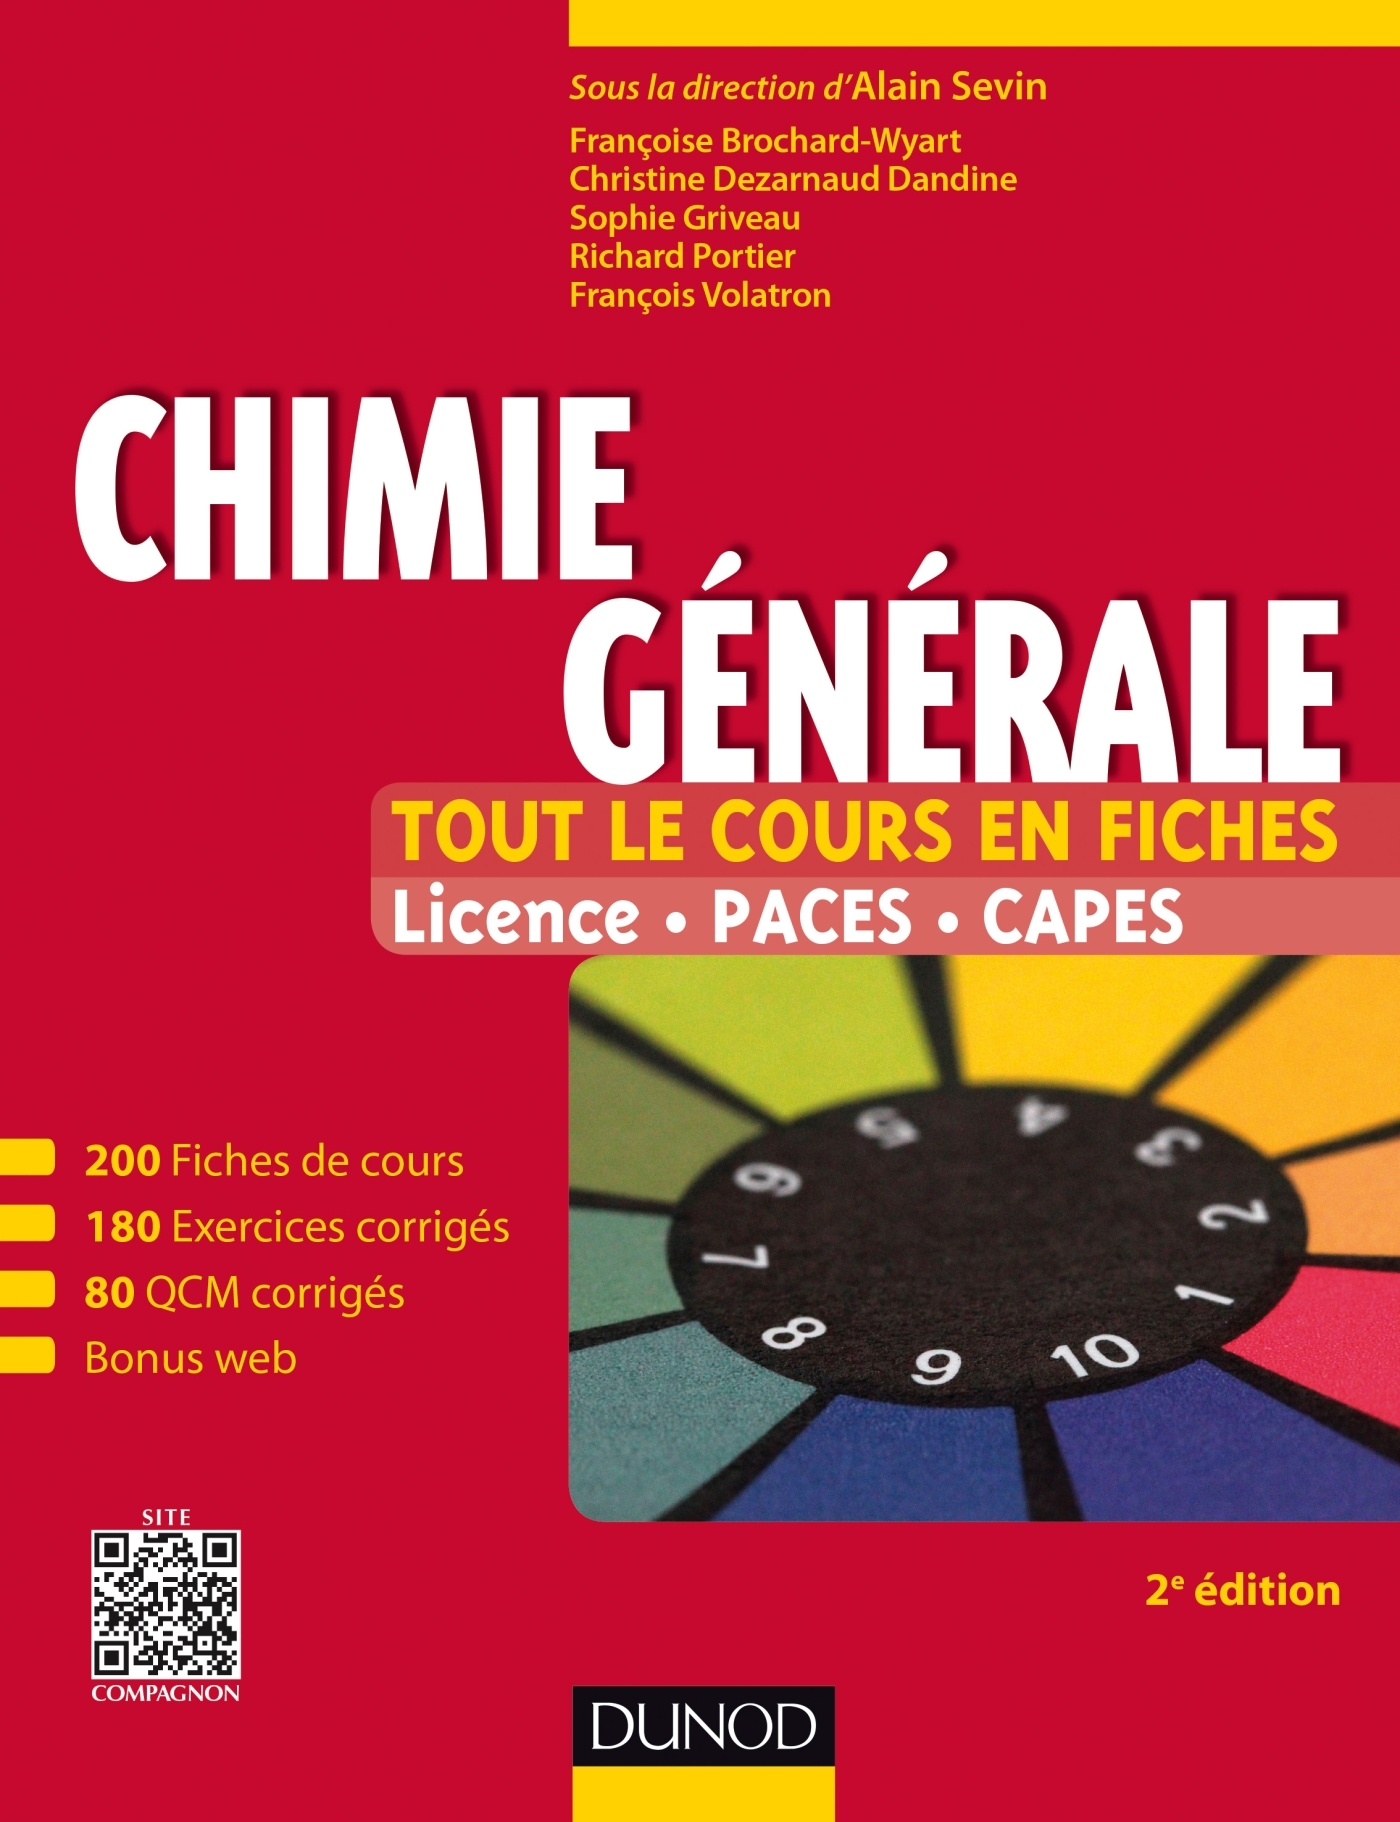 Chimie Generale Tout Le Cours En Fiches Licence Paces Capes Site Compagnon Livre Et Ebook Chimie De Francoise Brochard Wyart Dunod